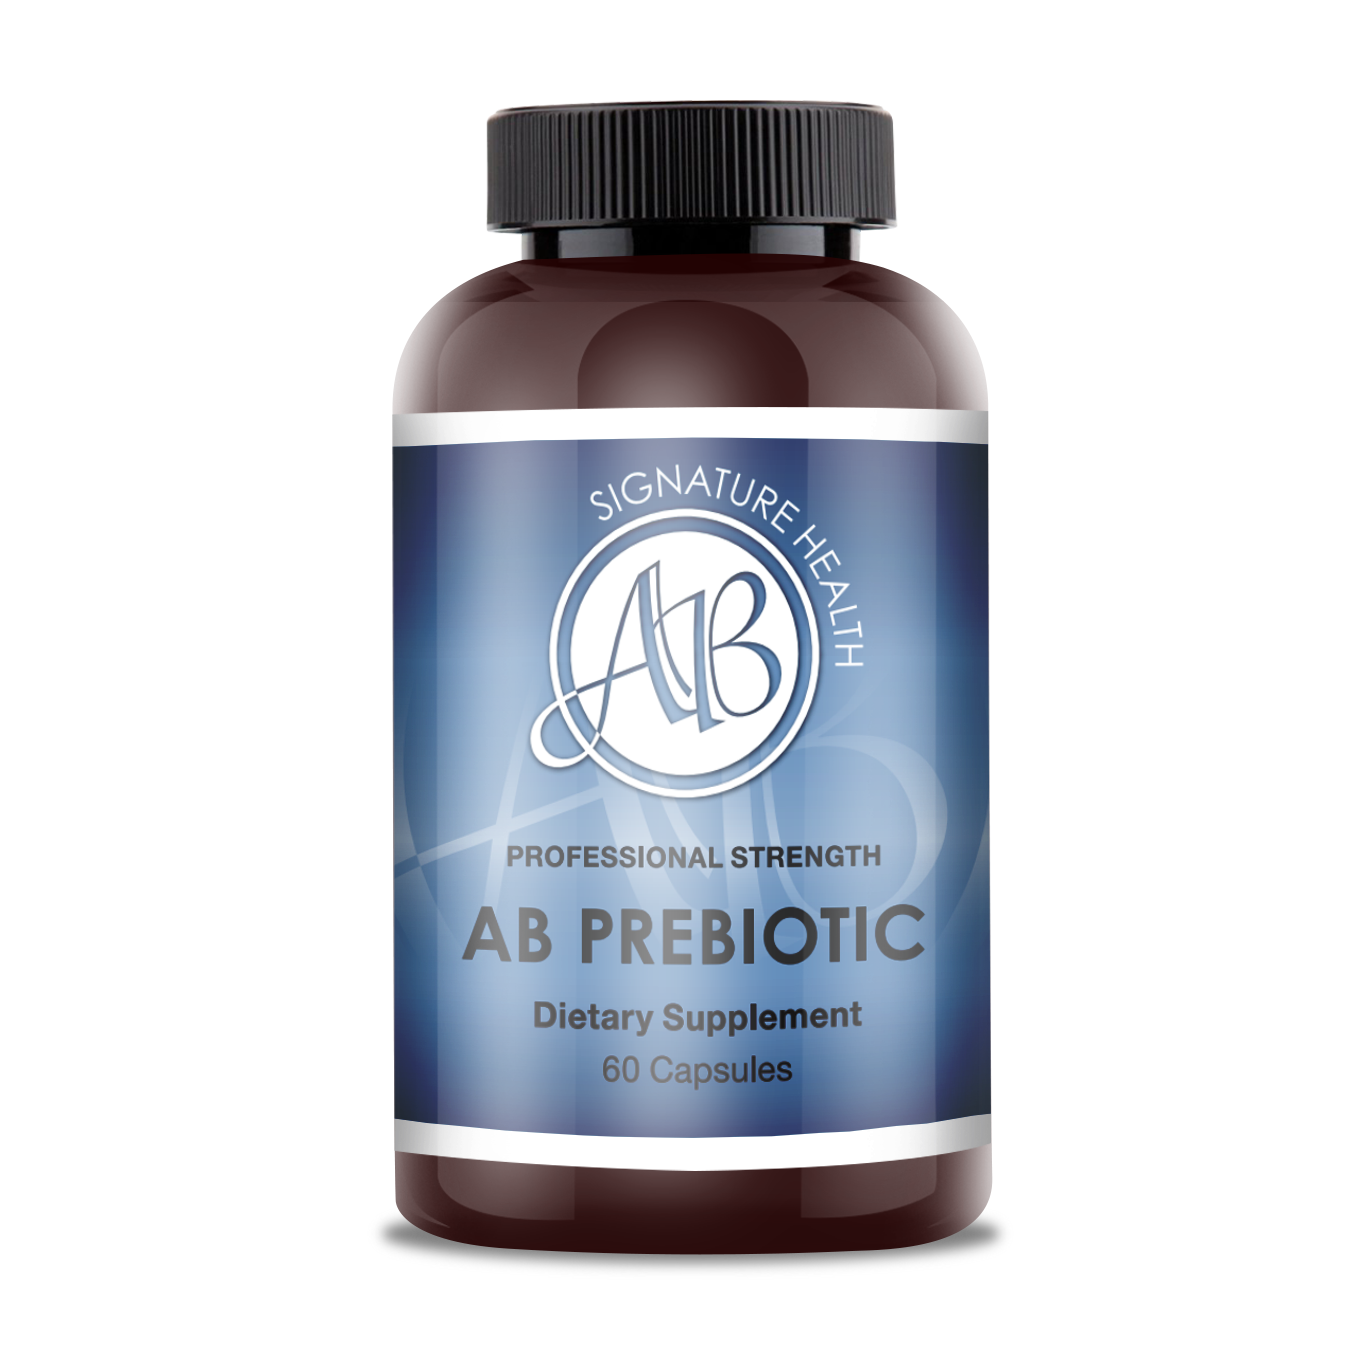 AB Prebiotic